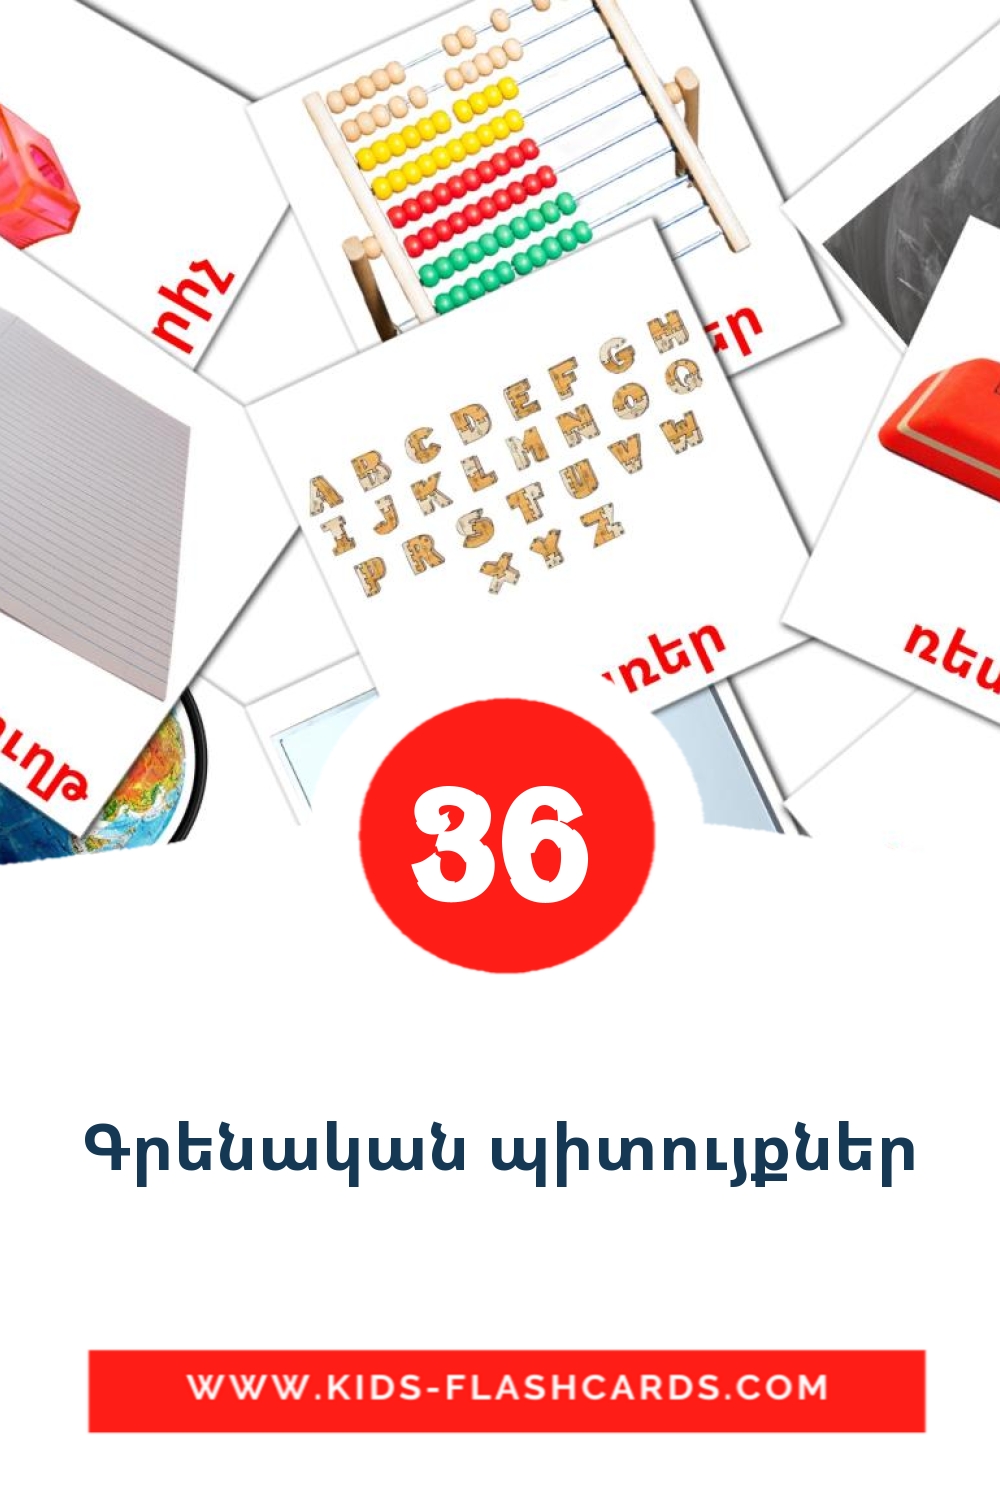 36 Գրենական պիտույքներ Bildkarten für den Kindergarten auf Armenisch